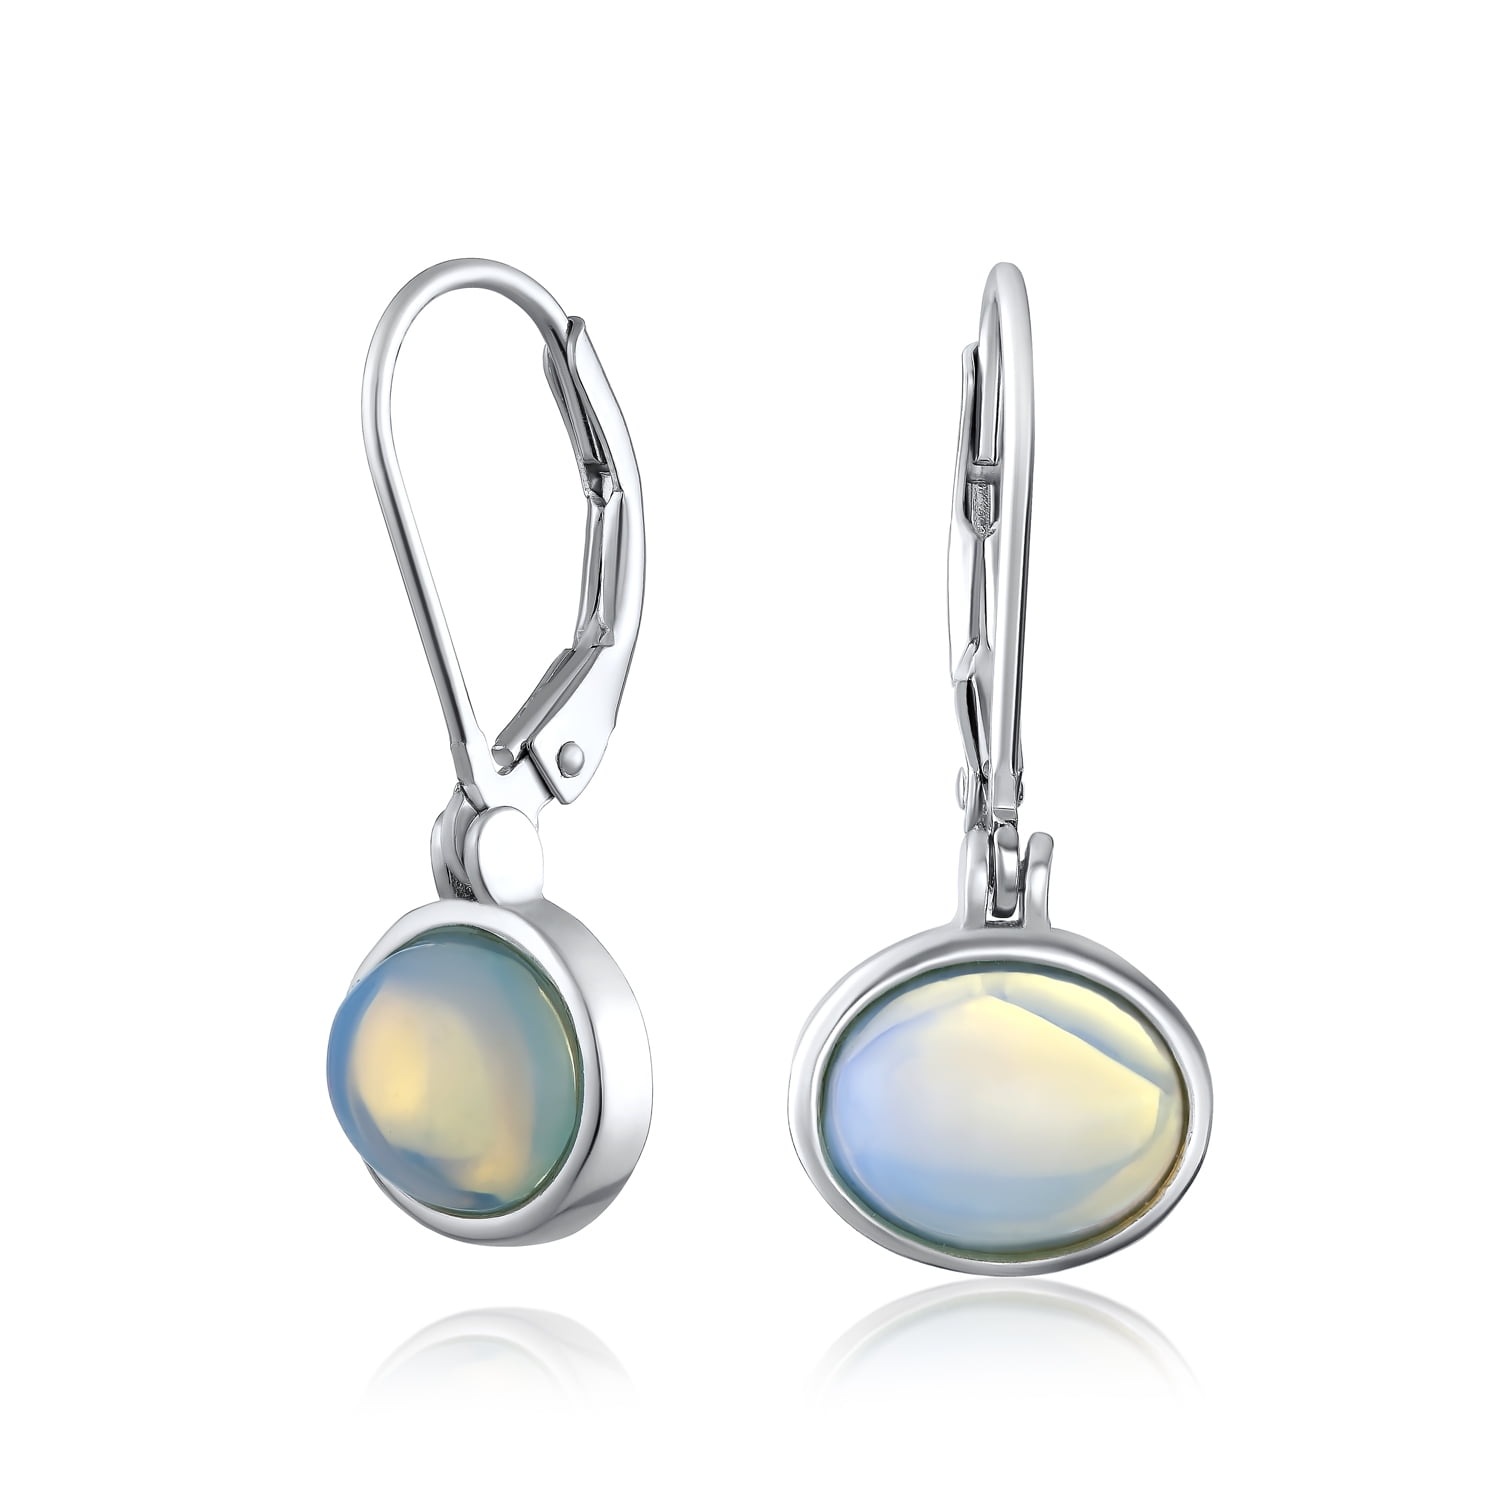 Sterling Silver Handmade Rectangle Moonstone Earrings White Rainbow Oblong Drops